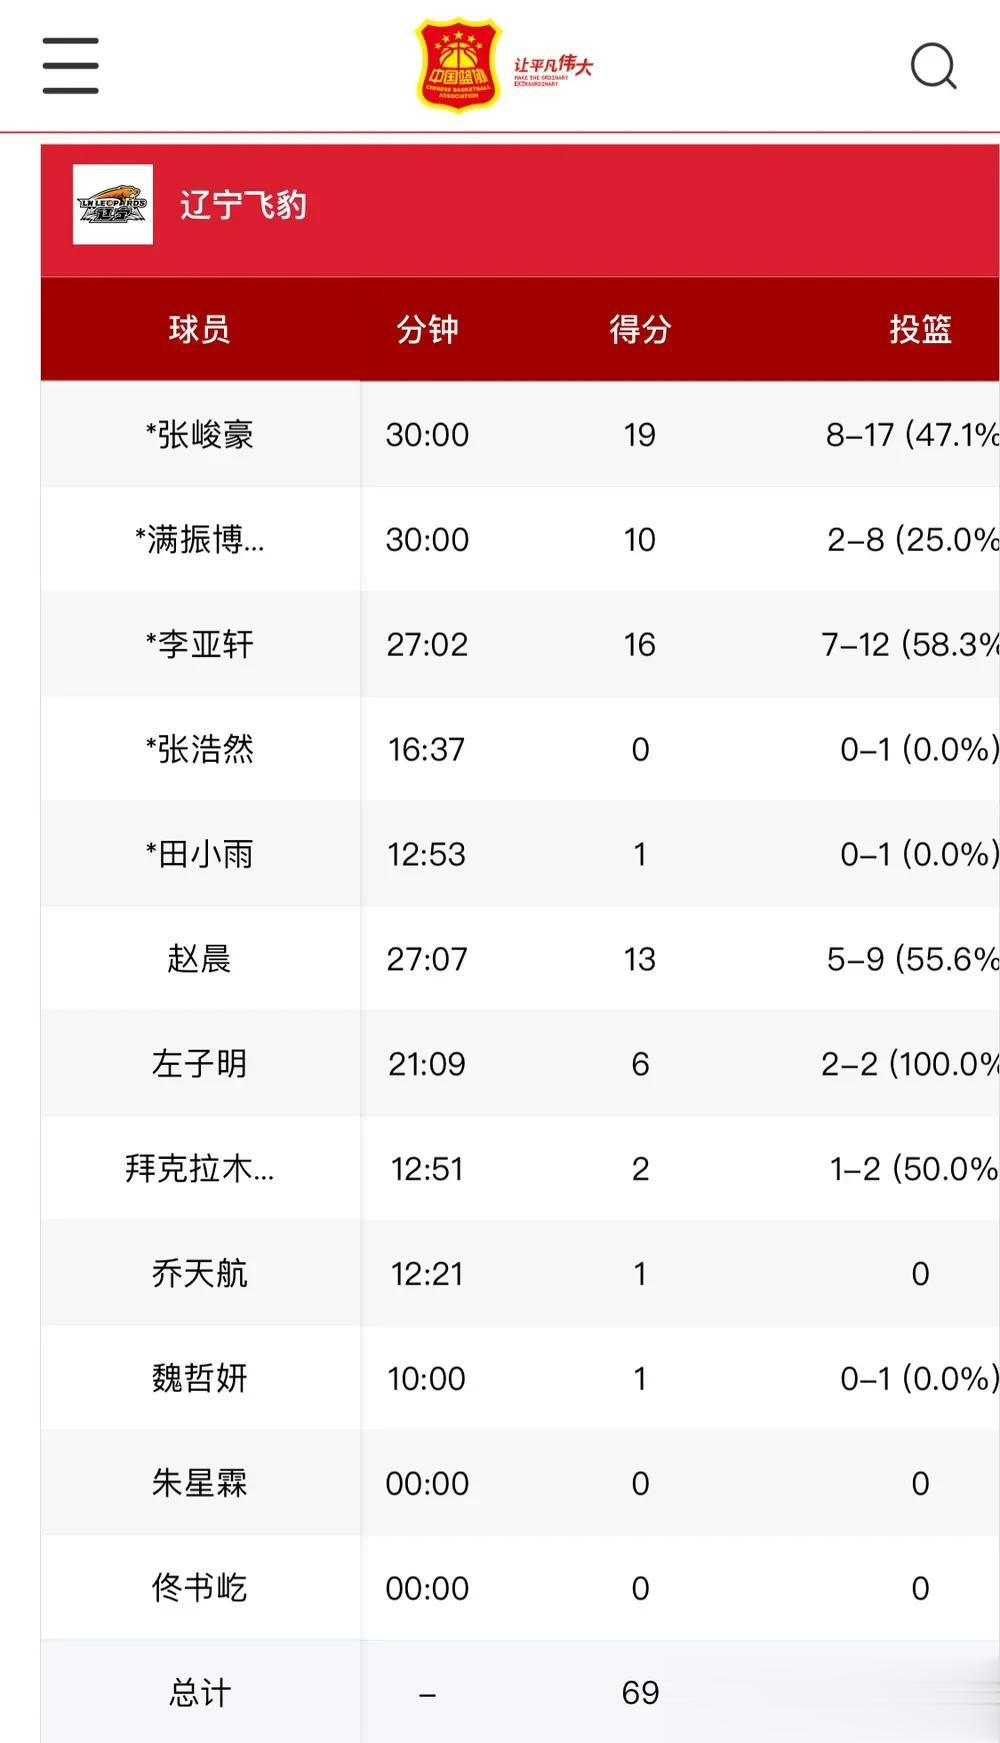 U19辽宁战胜广厦比赛数据：
张峻豪17投8中得到19分4篮板2助攻2抢断3失误